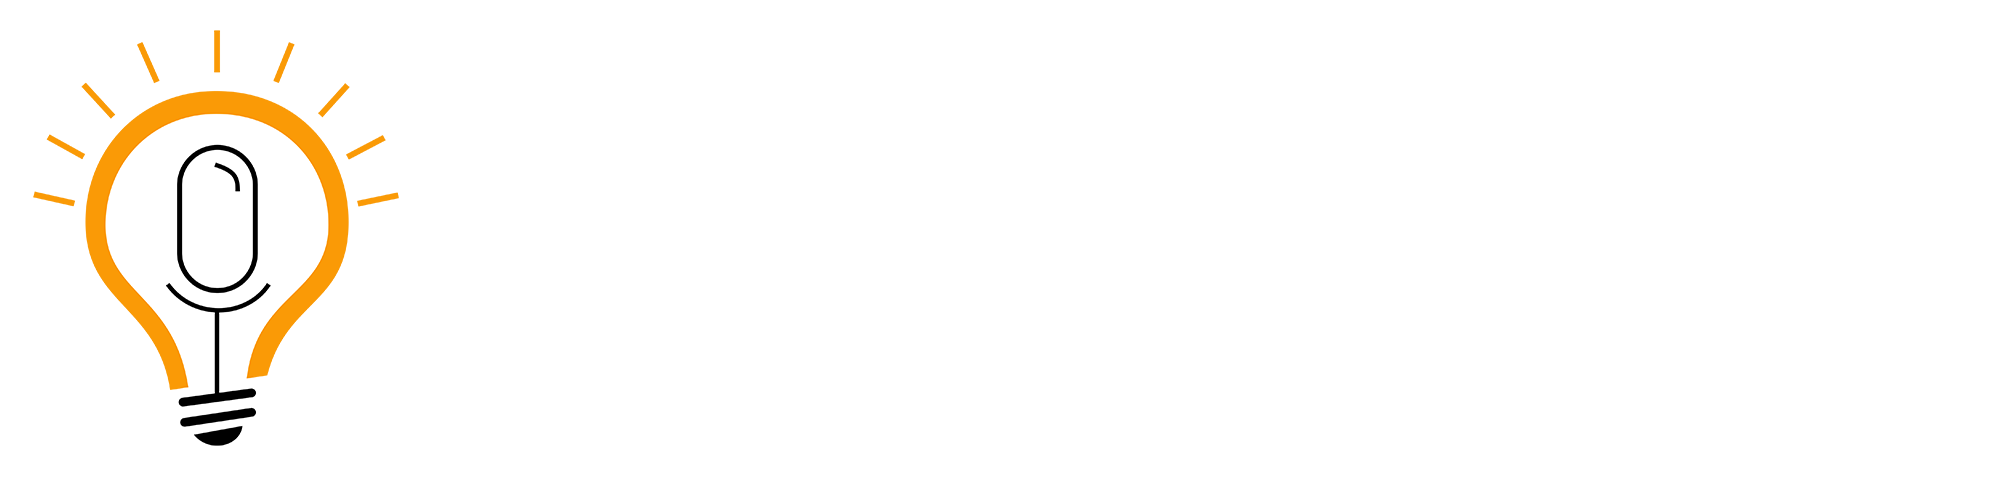 Lesaruss Logo